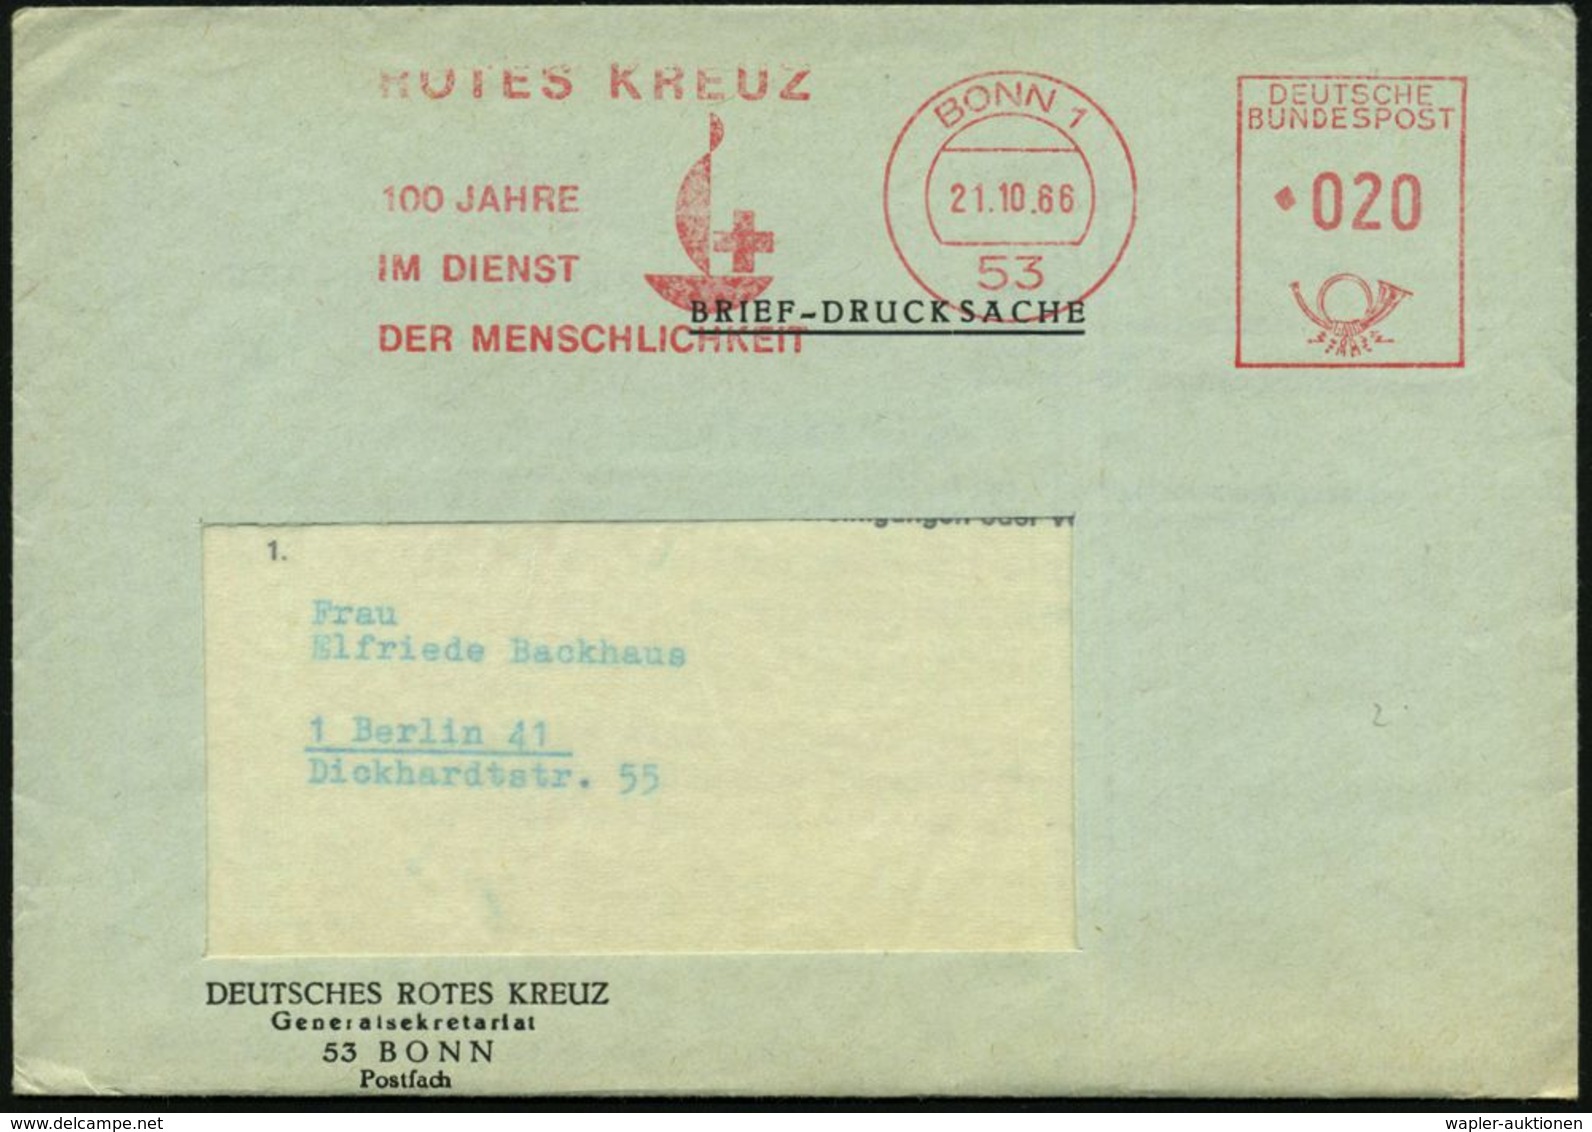 53 BONN 1/ ROTES KREUZ/ 100 JAHRE/ IM DIENST/ DER MENSCHLICHKEIT 1966 (21.10.) Jubil.-AFS = IRK-Logo , Dienst-Bf.:  D R  - Croix-Rouge